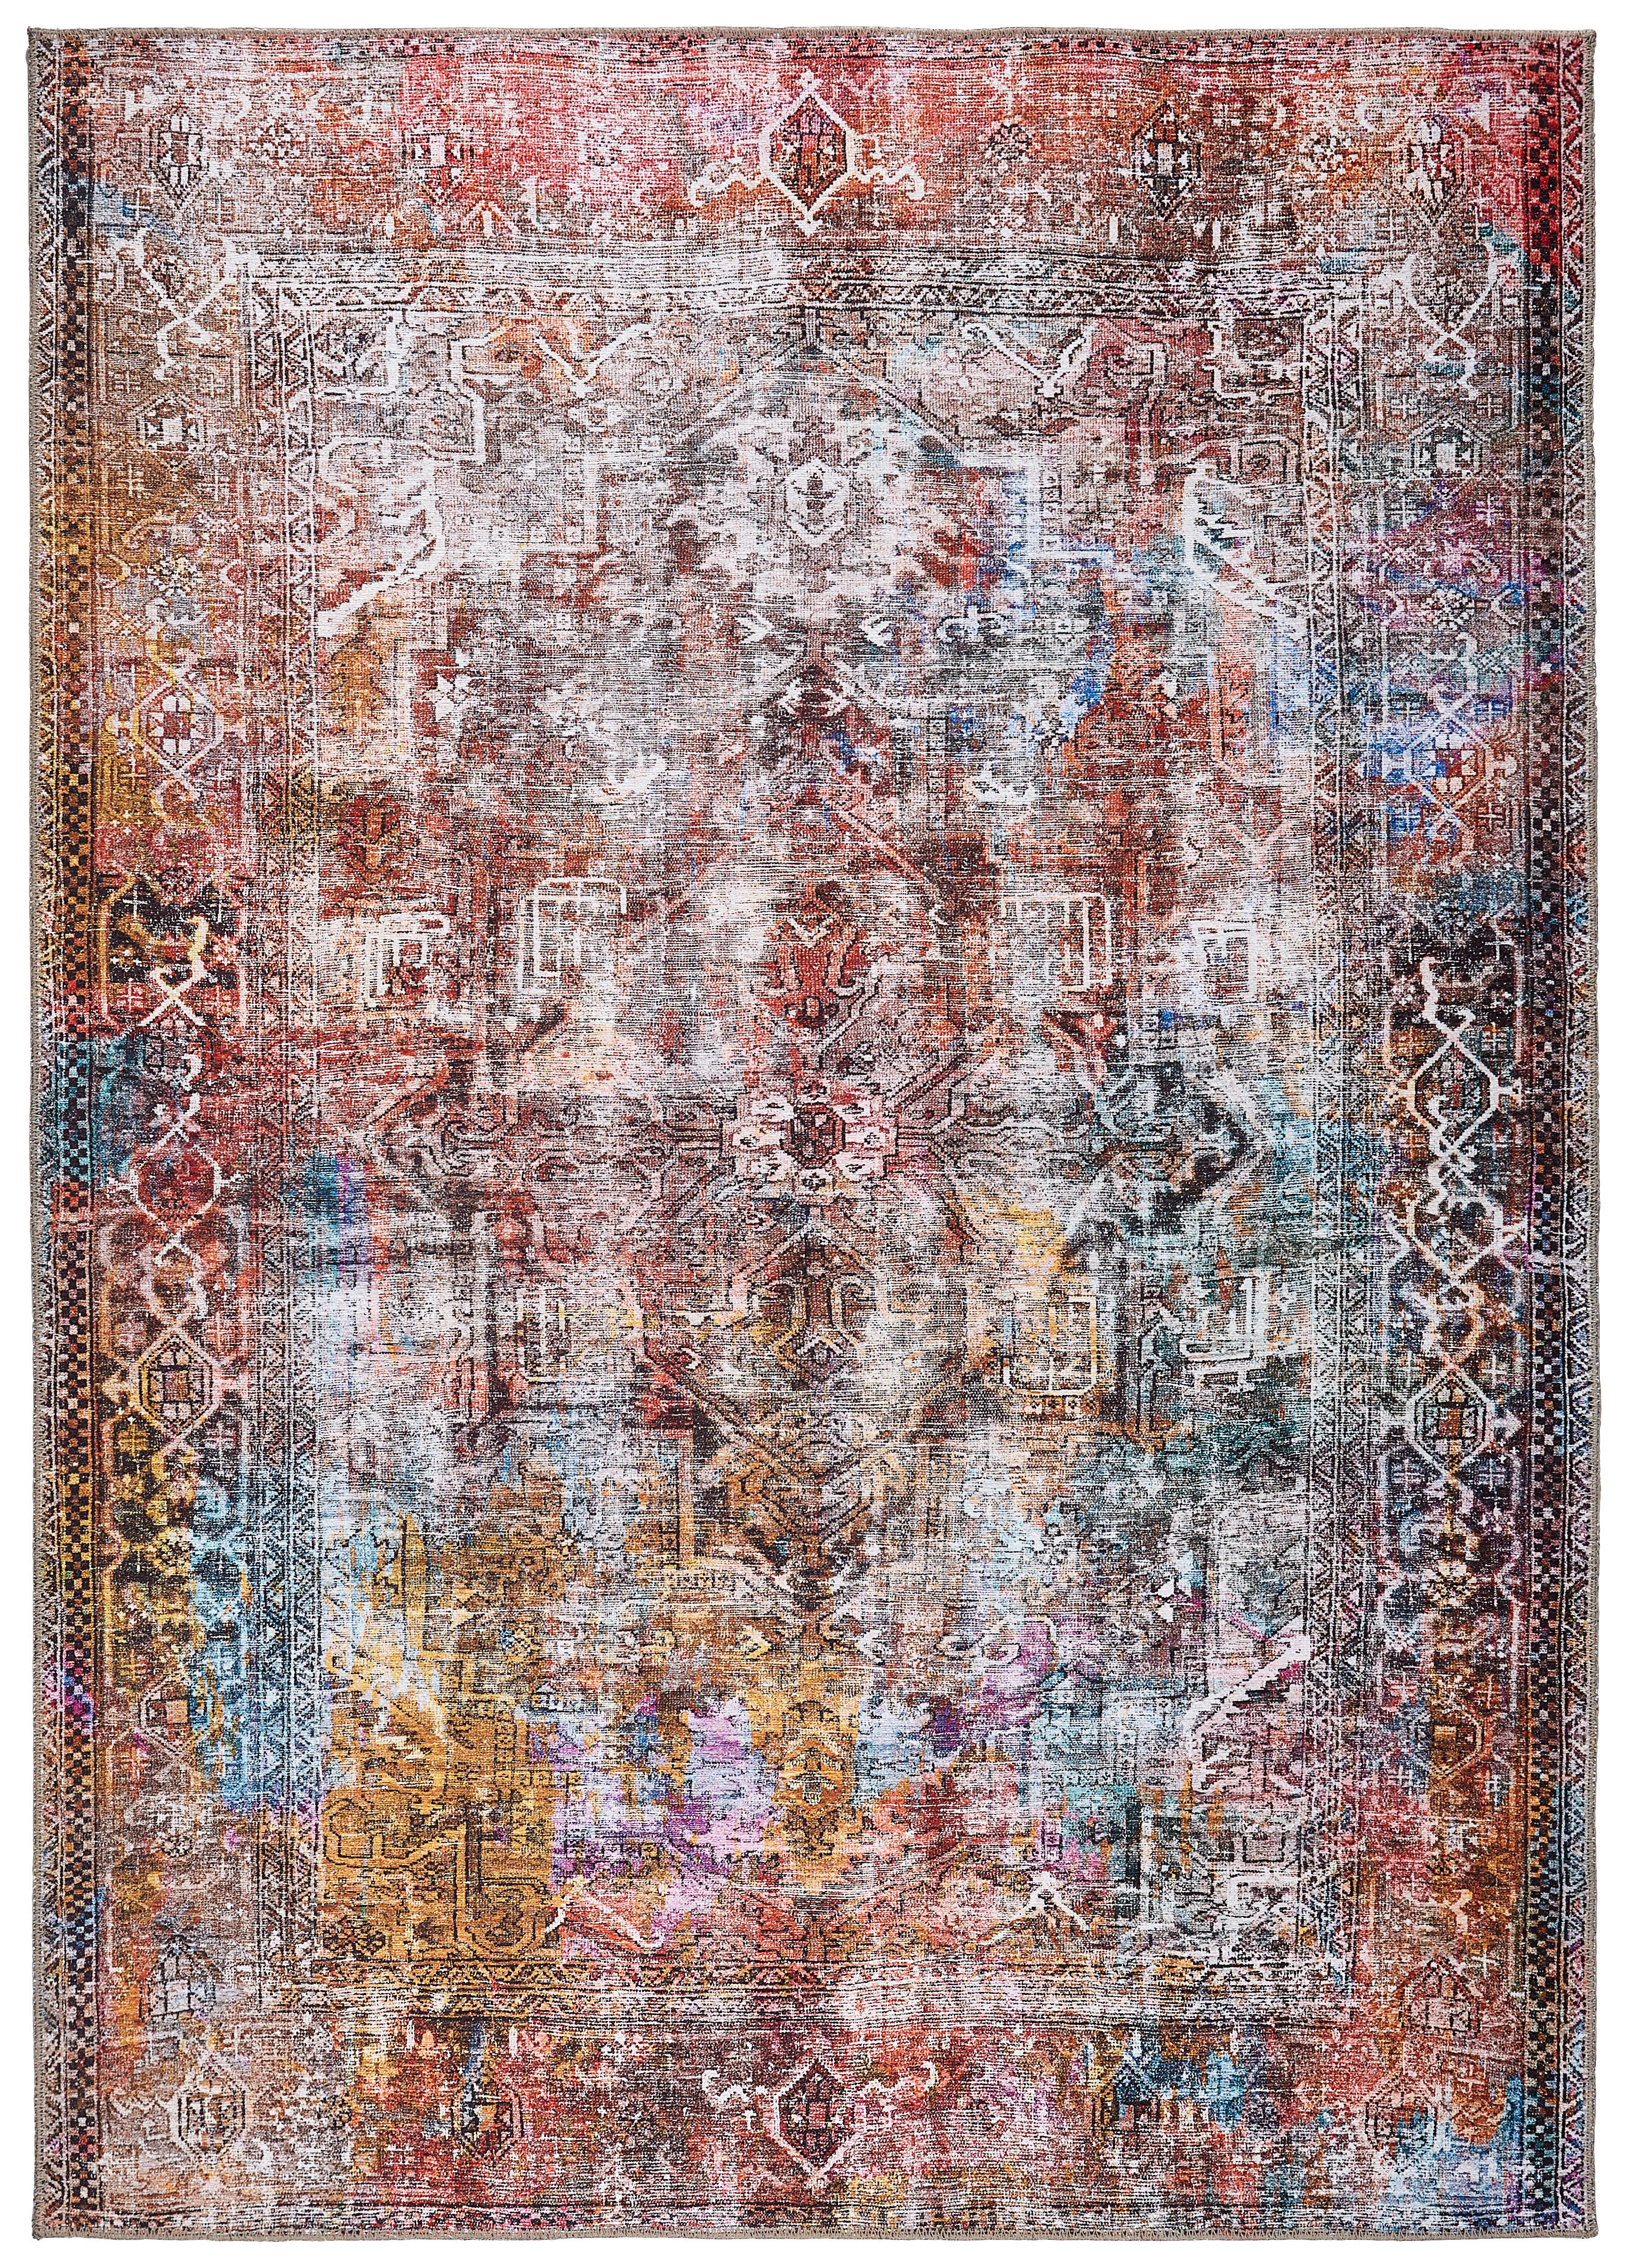 VINTAGE-TEPPICH  130/190 cm  Multicolor   - Multicolor, LIFESTYLE, Textil (130/190cm) - Novel